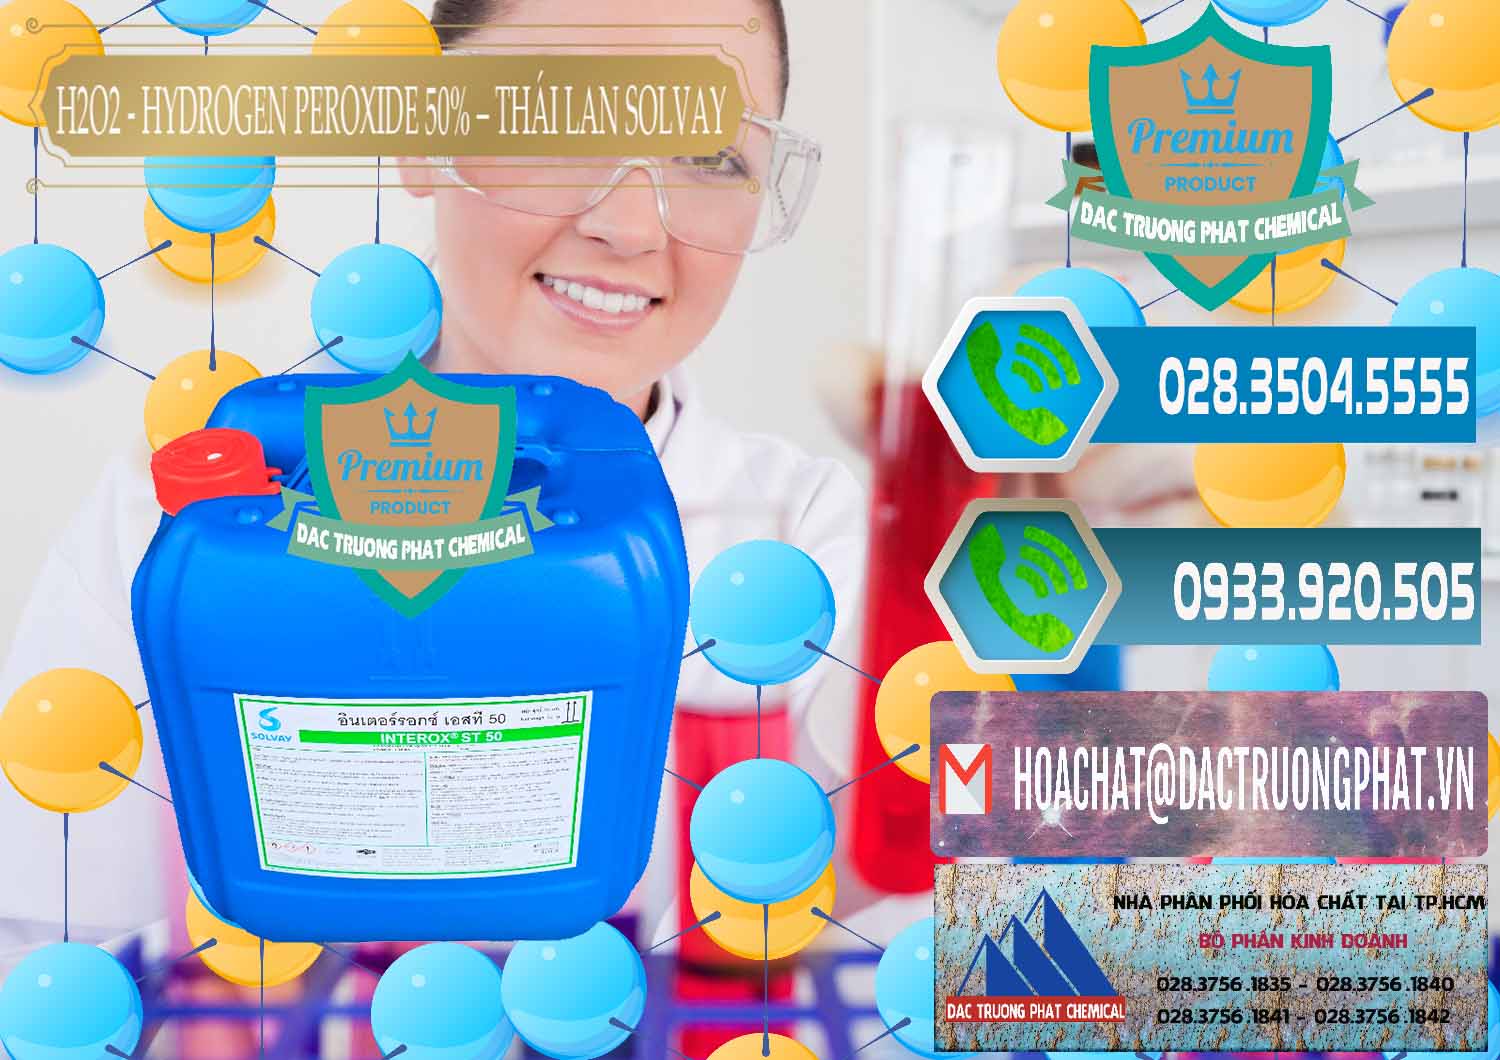 Nơi chuyên bán và cung ứng H2O2 - Hydrogen Peroxide 50% Thái Lan Solvay - 0068 - Cty chuyên nhập khẩu _ phân phối hóa chất tại TP.HCM - congtyhoachat.net